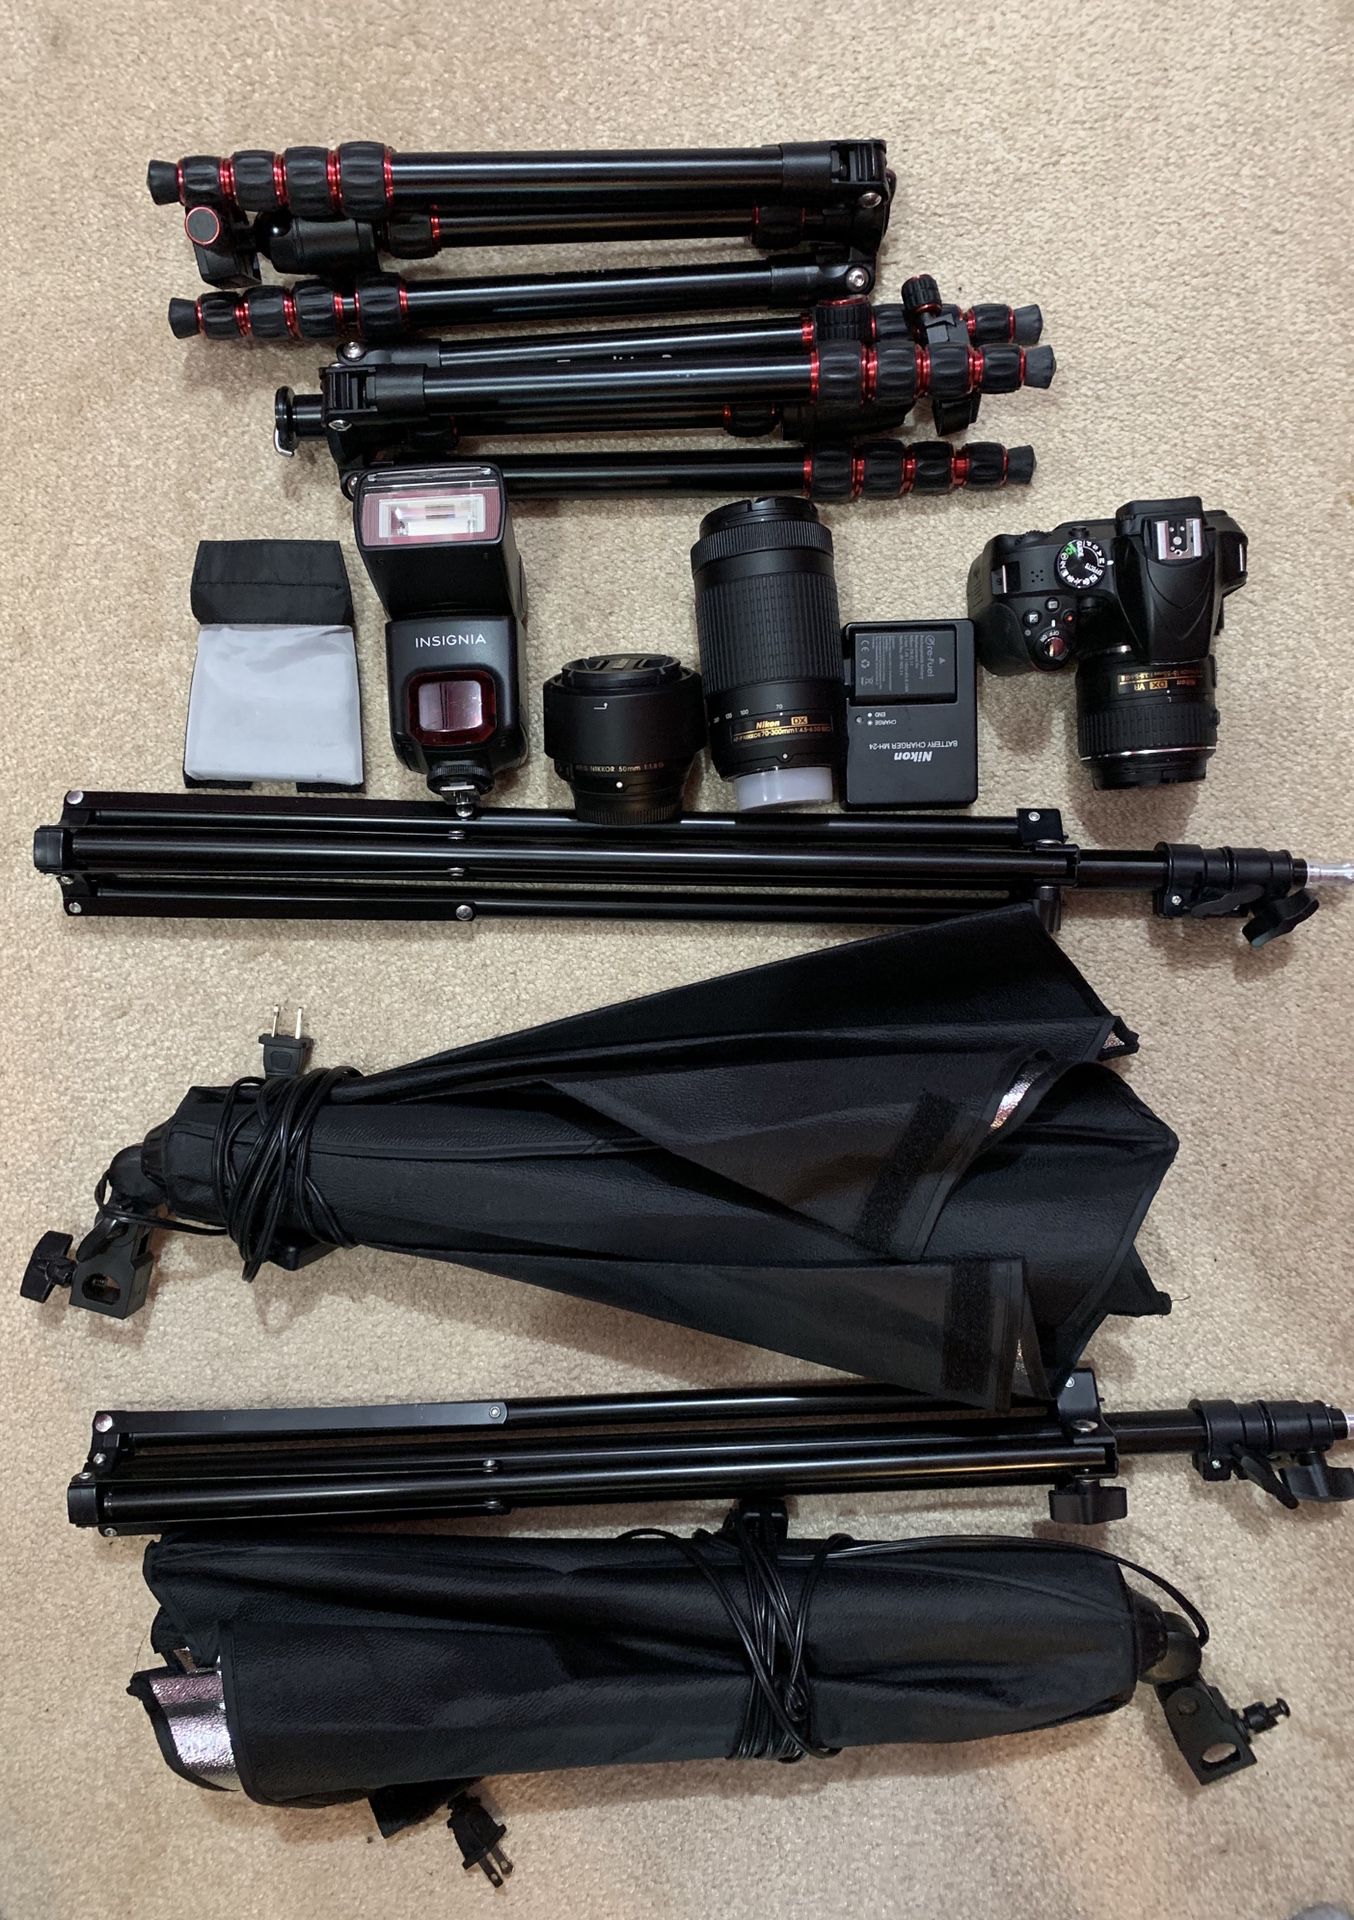 Beginner’s Photography Studio Setup - Nikon D3300 w. Lenses, Lights